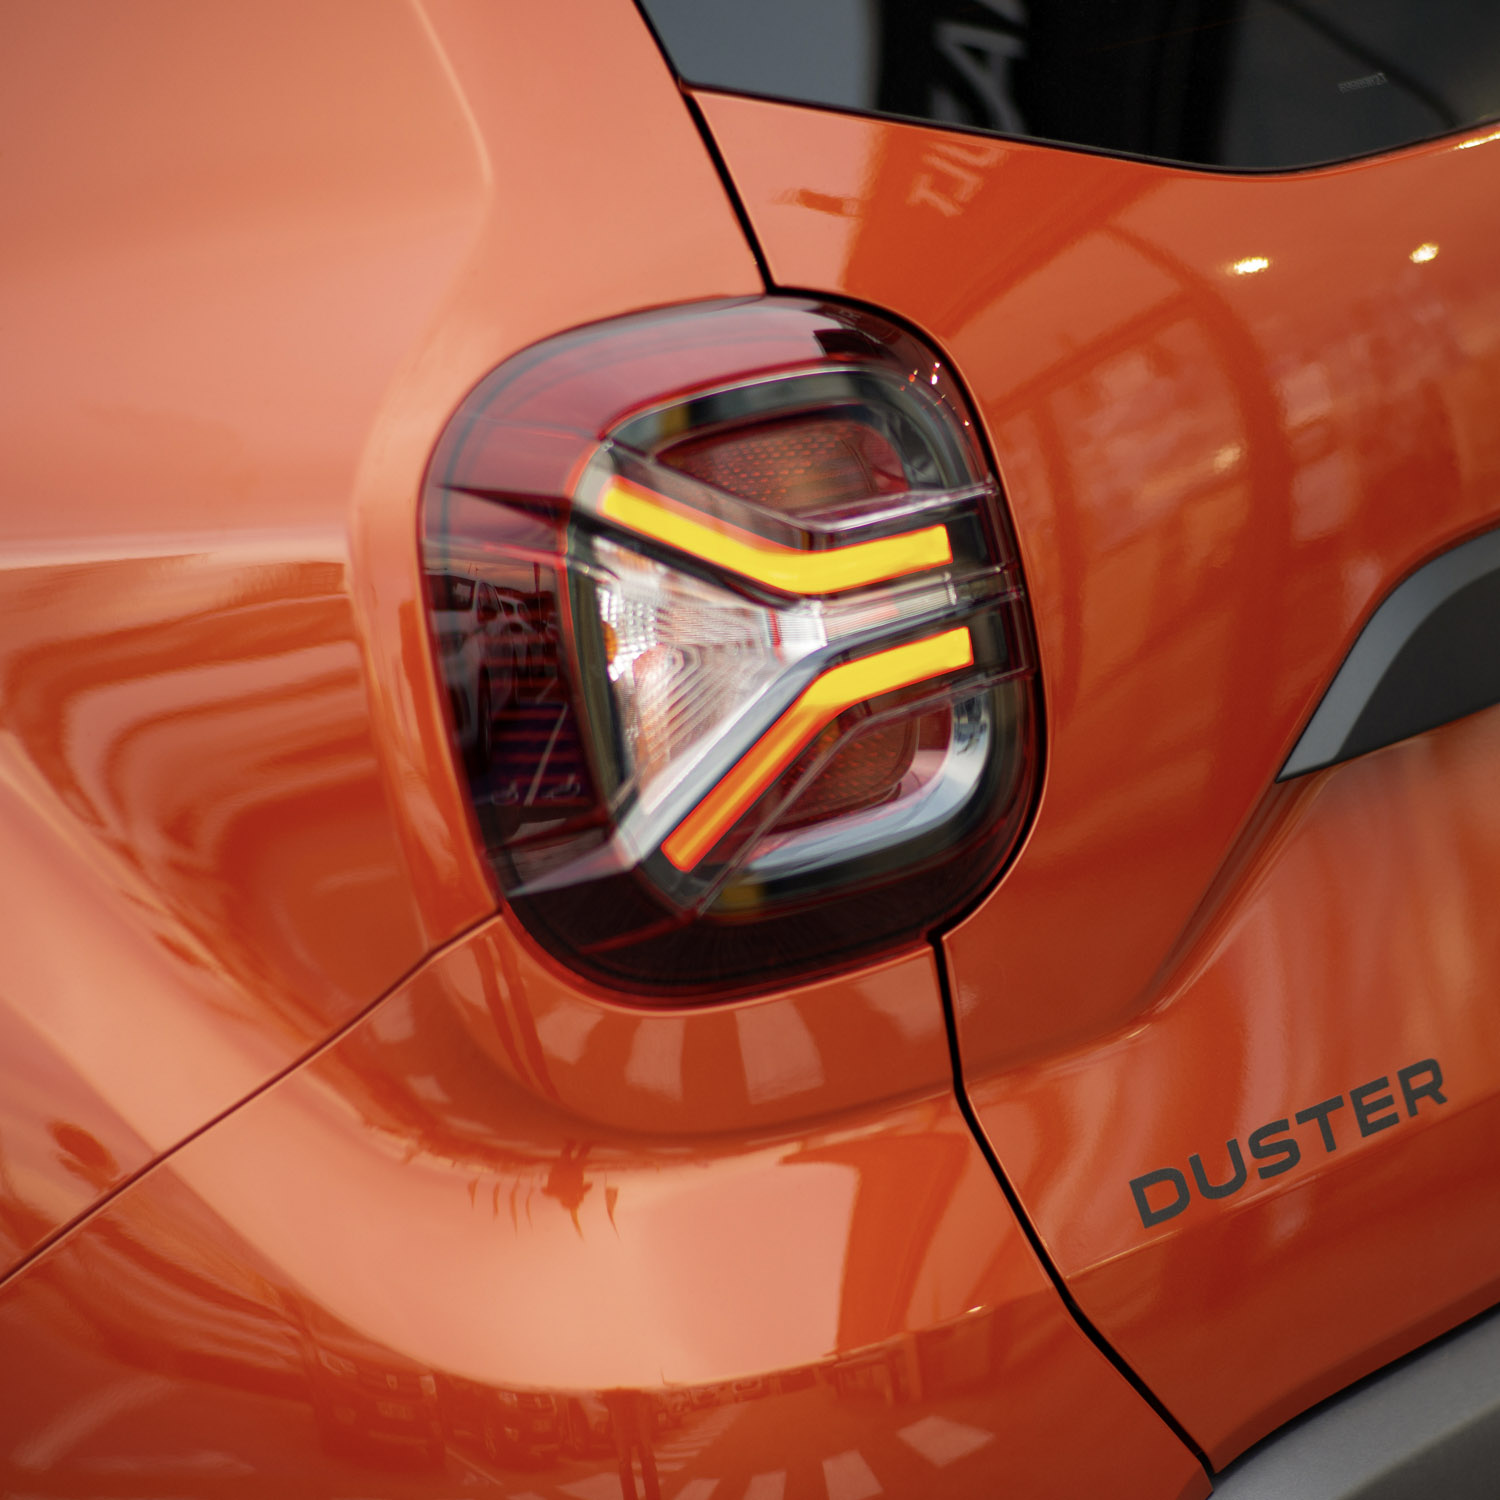 L'identité lumineuse du nouveau Dacia Duster. C'est très réussi !